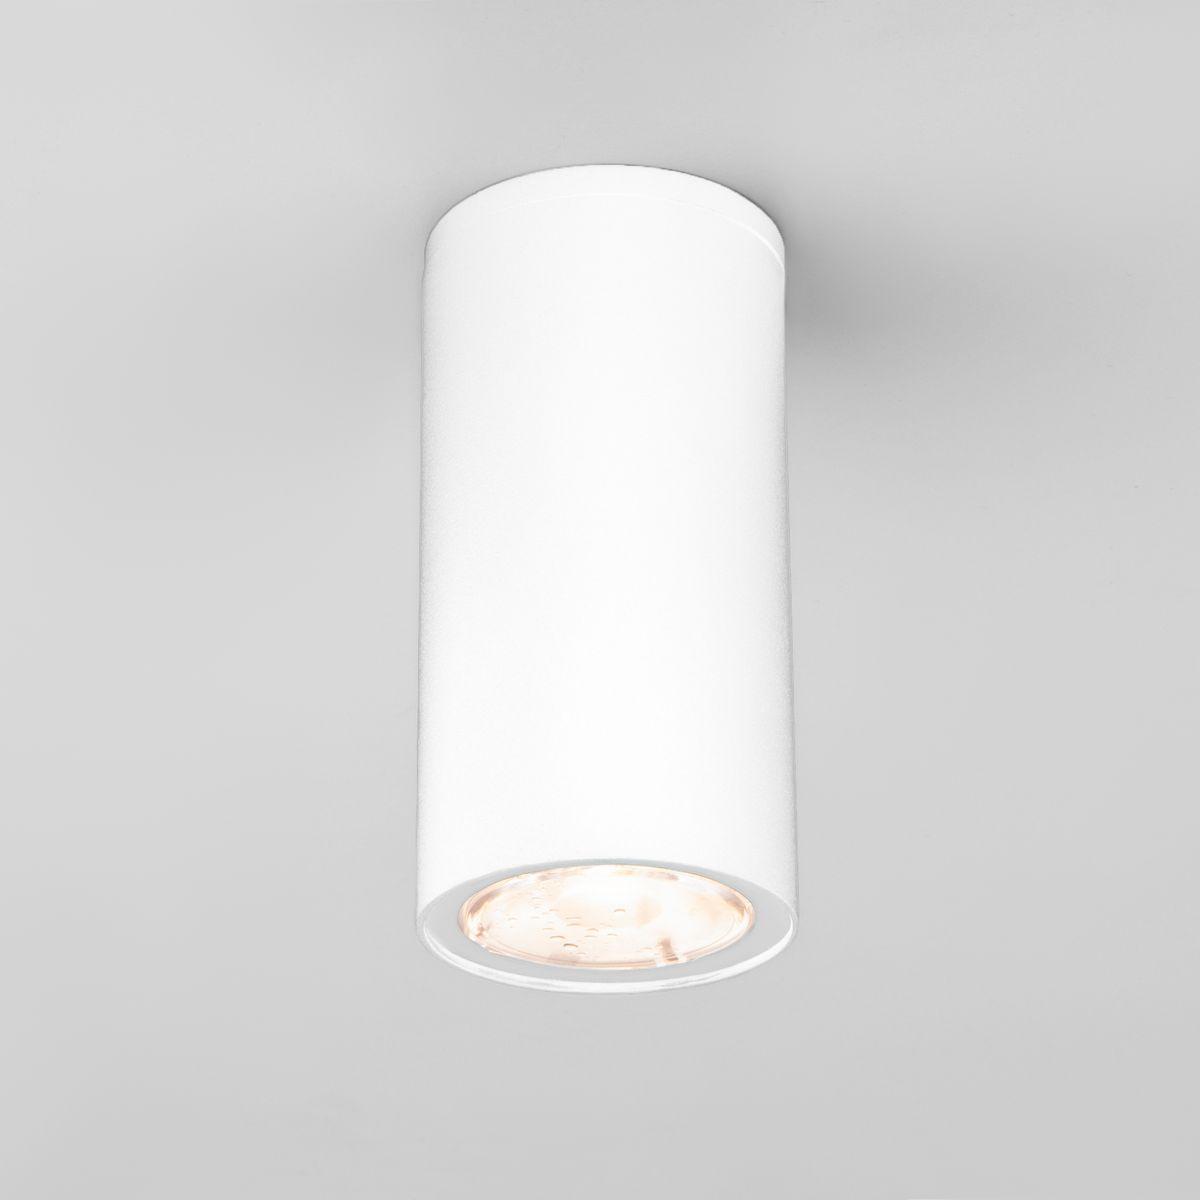 Уличный светодиодный светильник Elektrostandard Light 35129/H белый 4690389176555 светодиодный шар 50 см белый rl b50 200 w